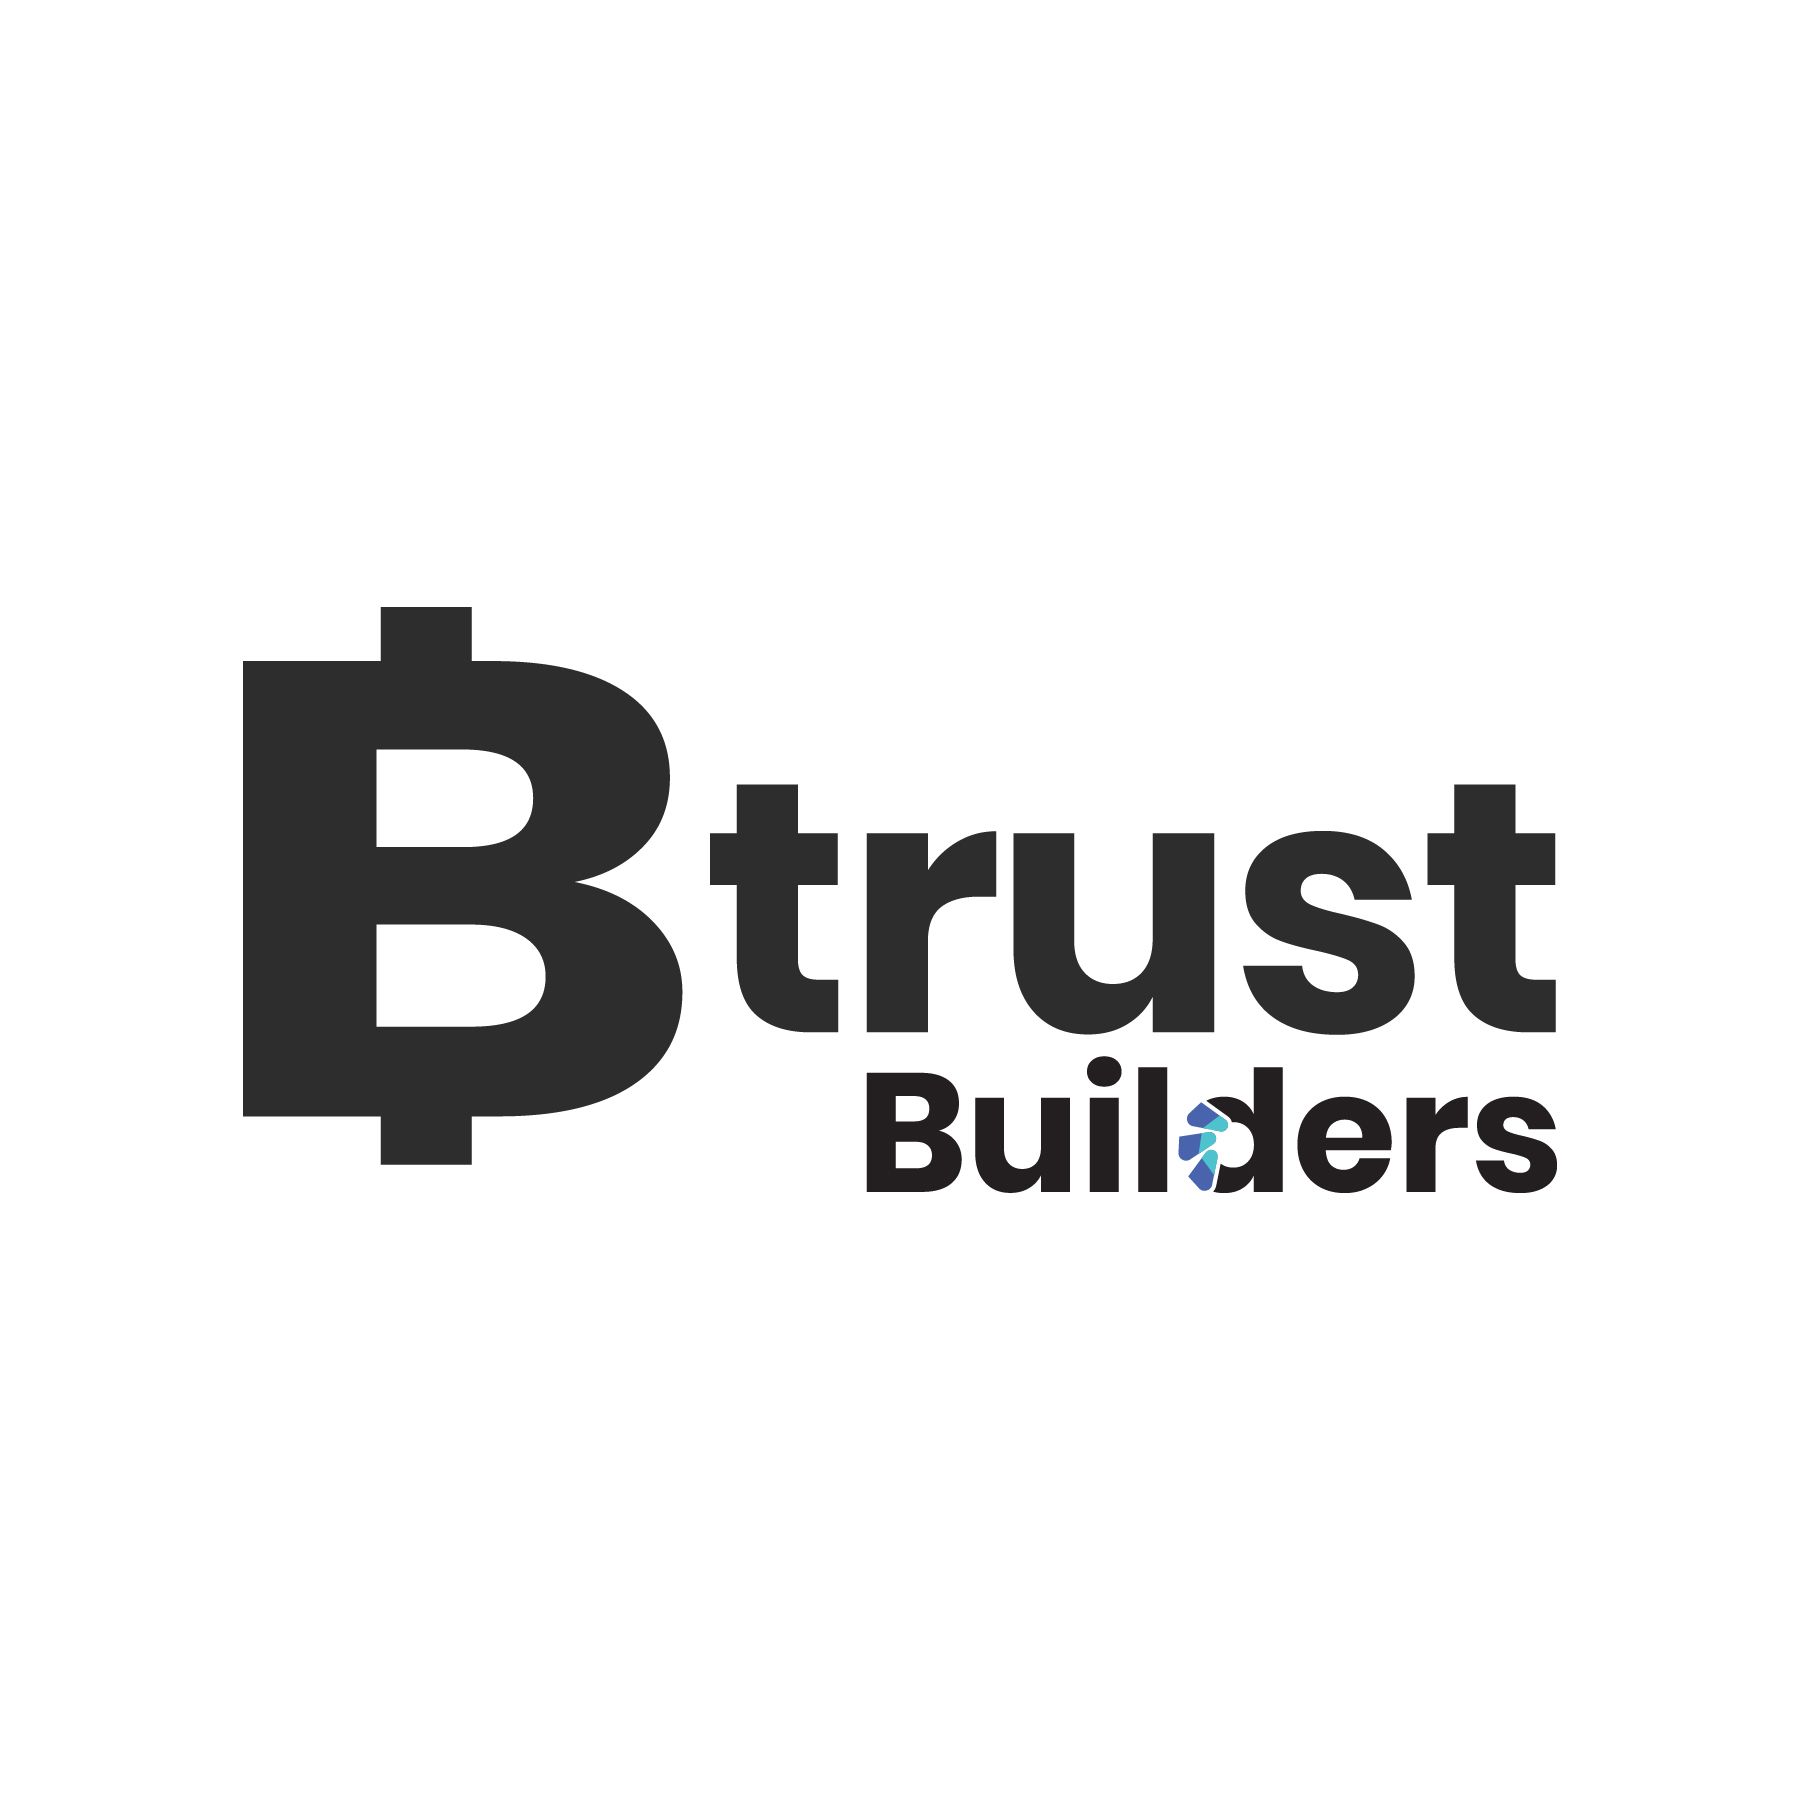 Btrust Builders Comms